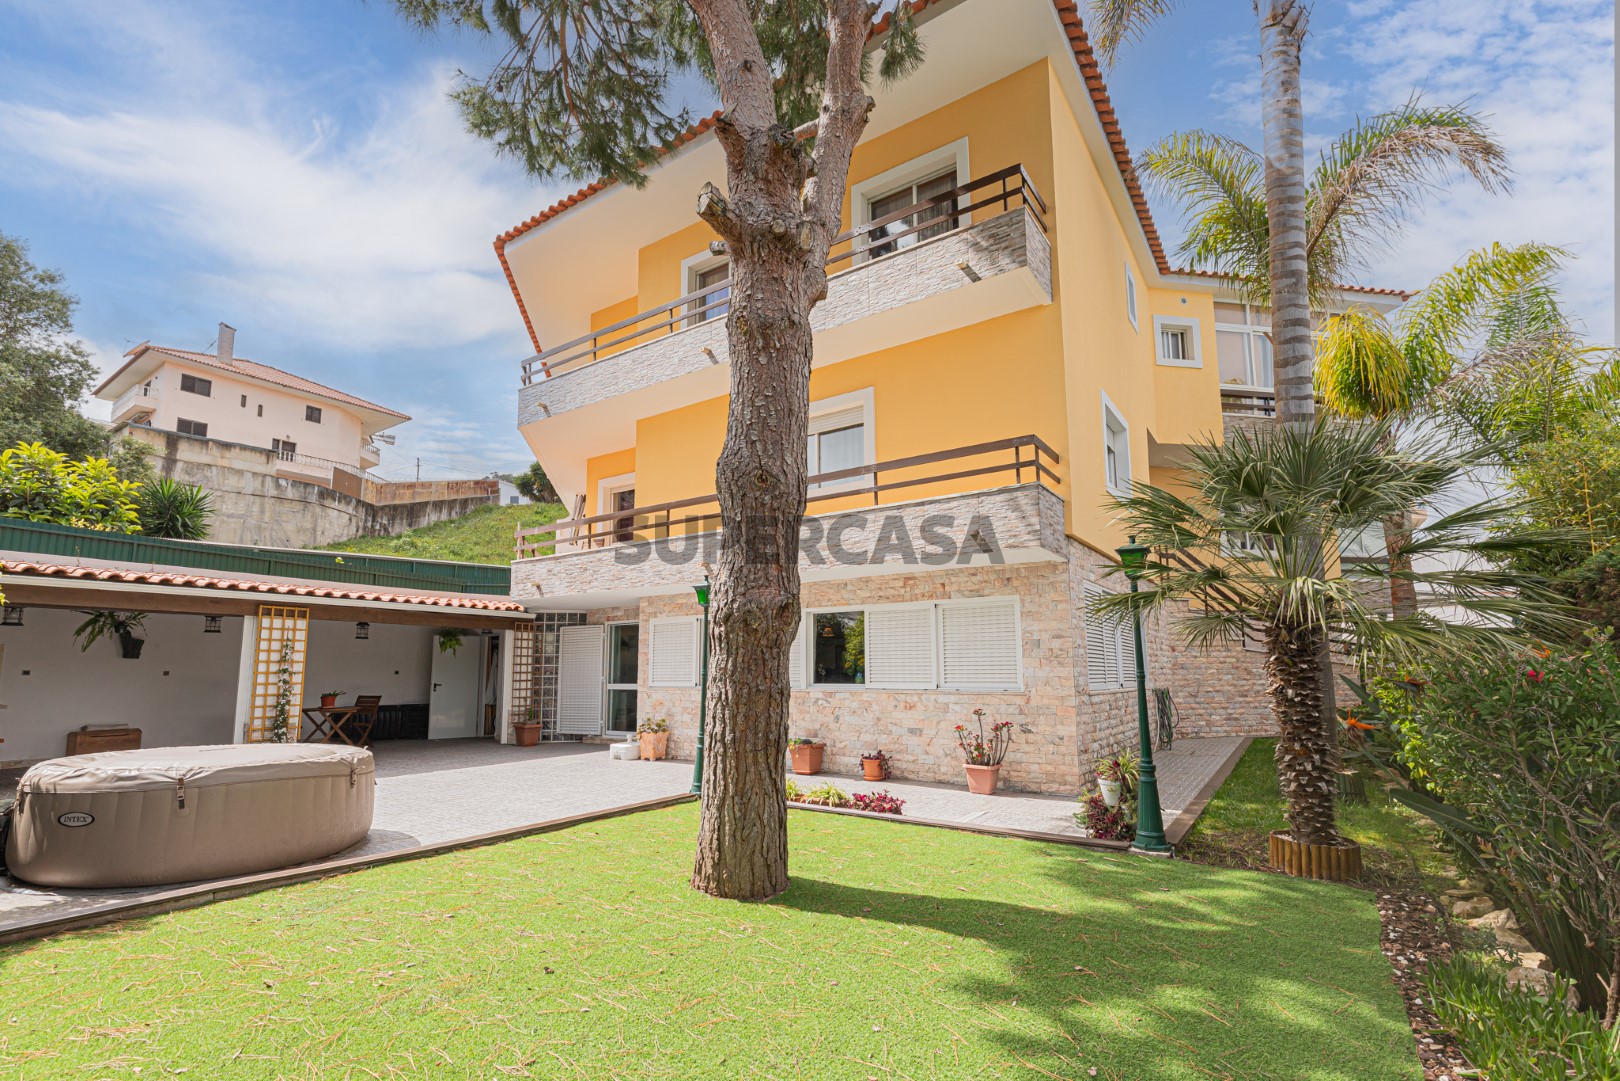 Haus in Barcarena - Oeiras - 649.000 €